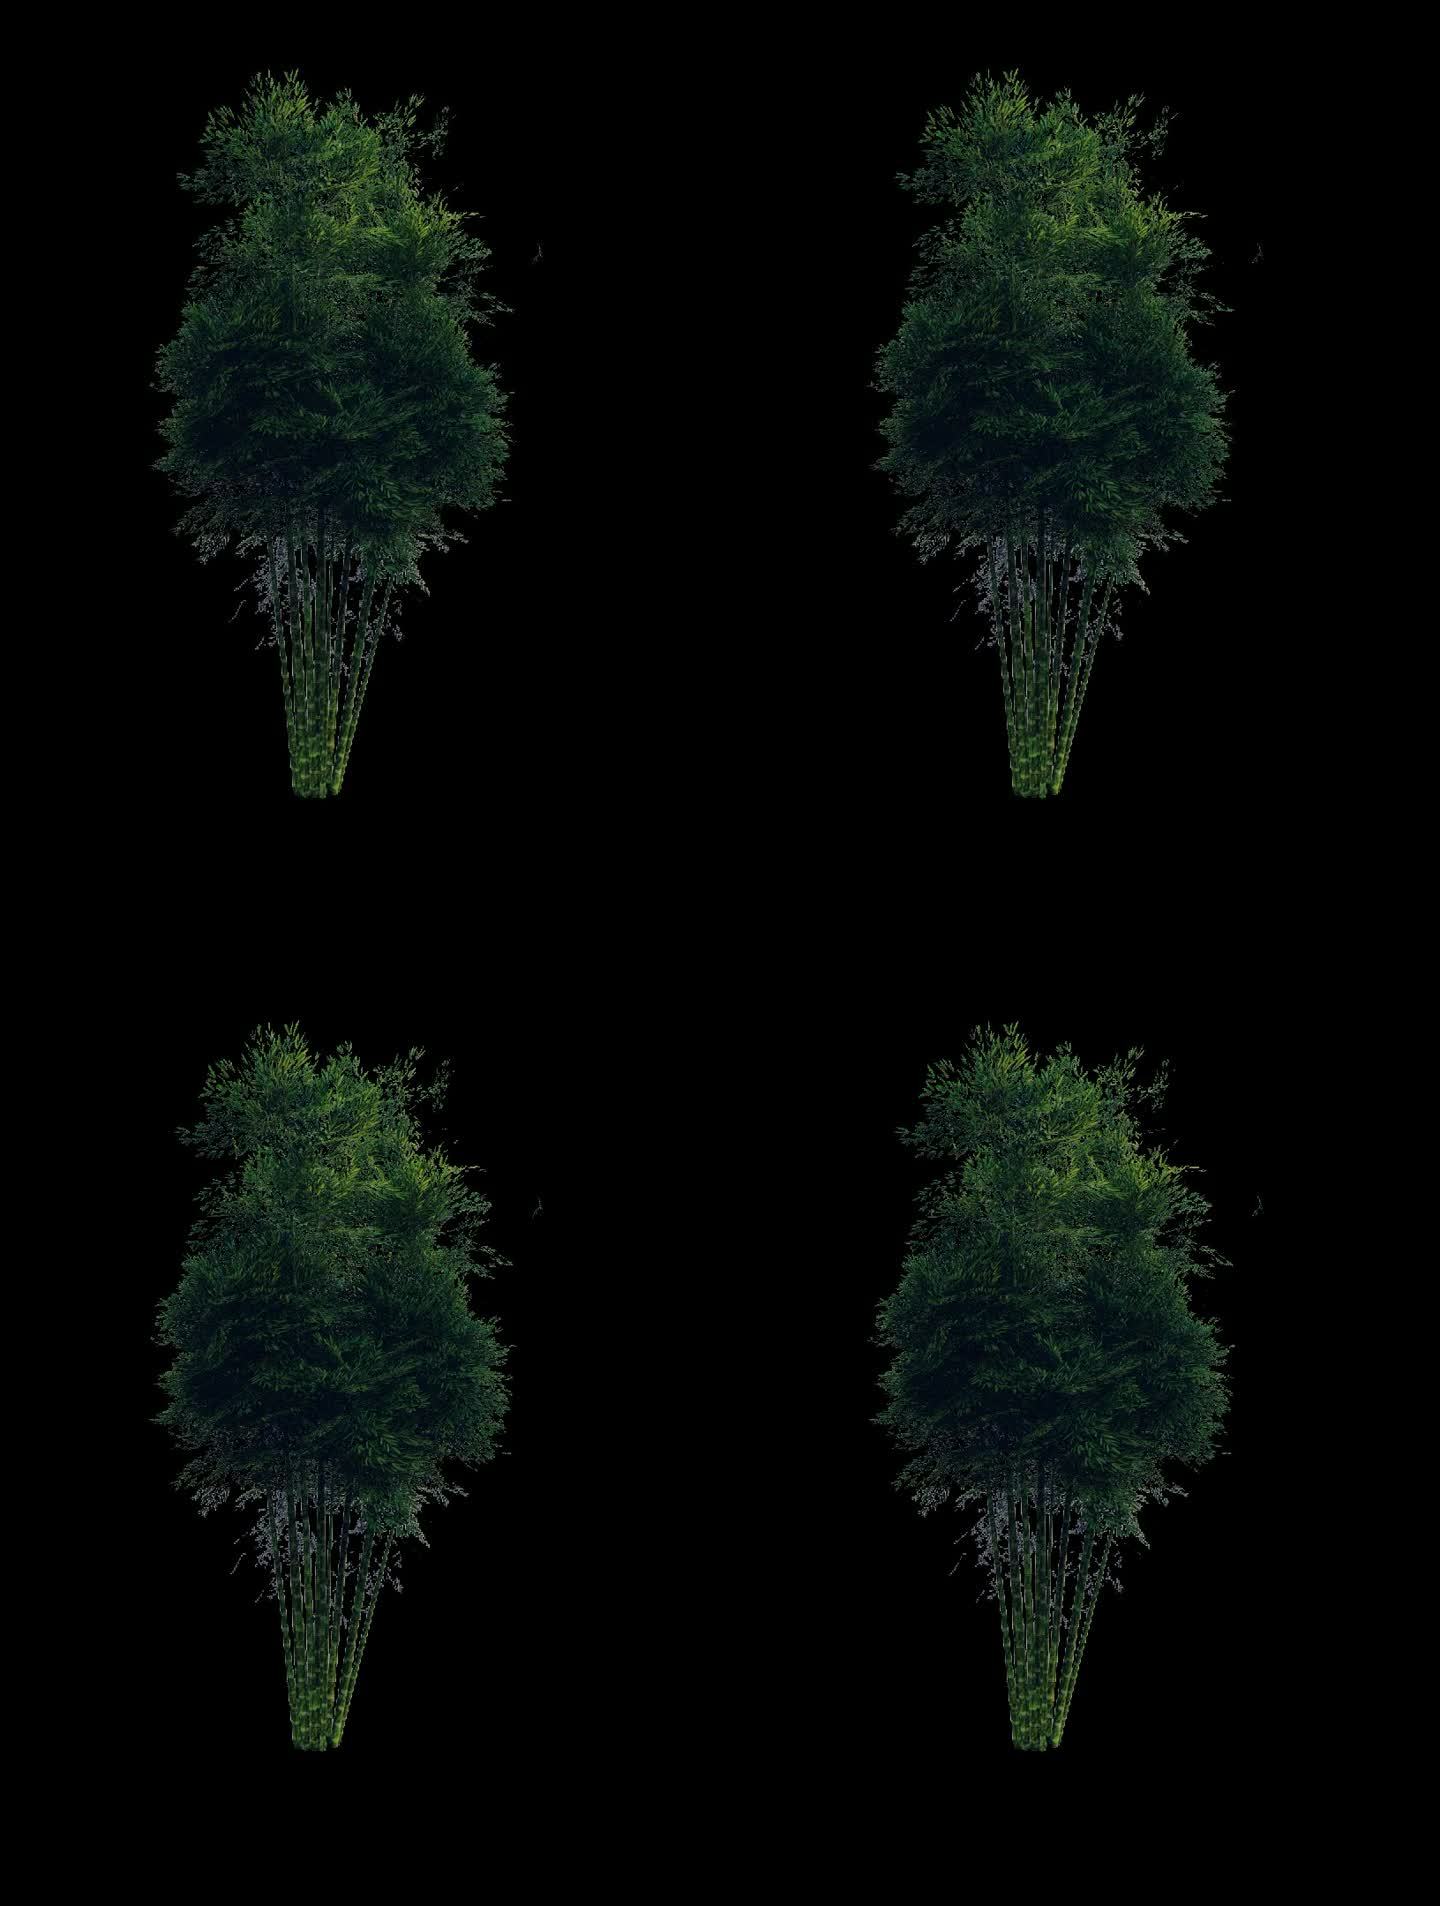 竹子 竹林 通道 场景 植物